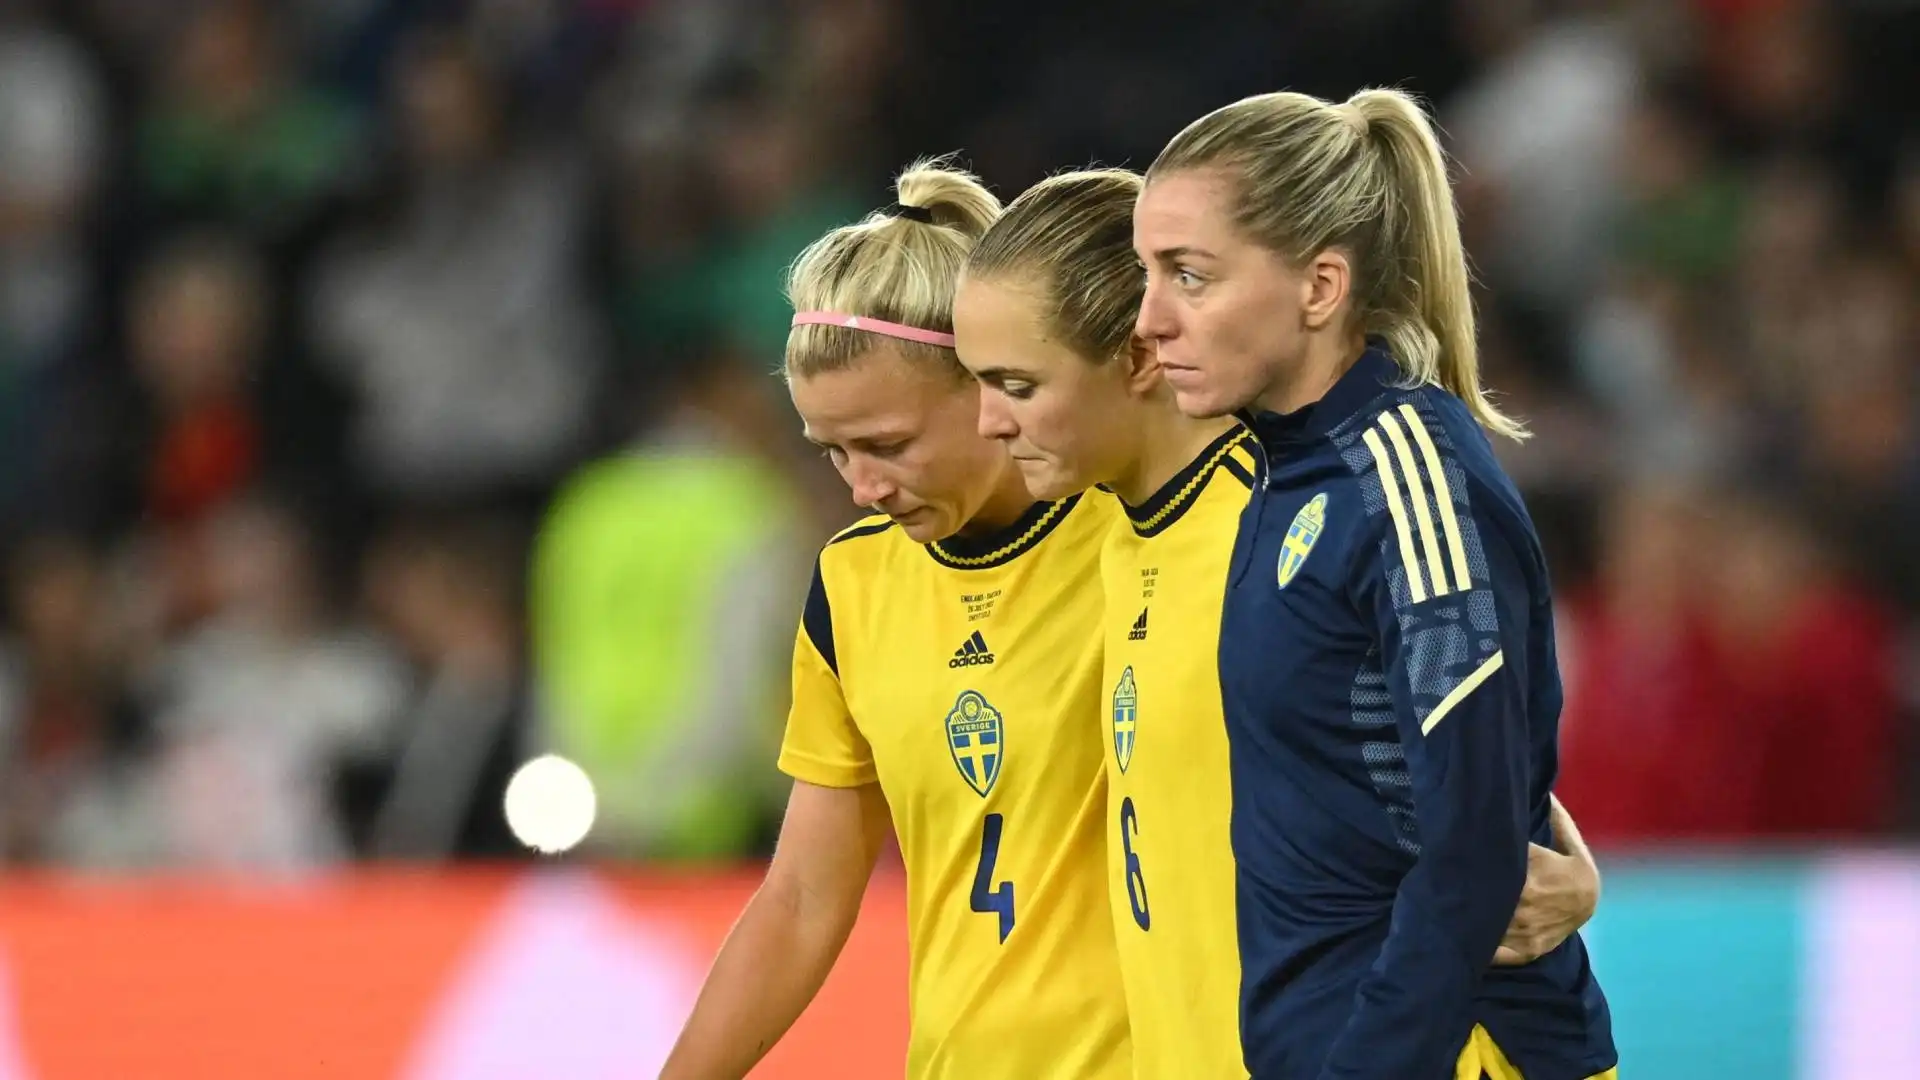 Le ragazze svedesi hanno comunque disputato un ottimo europeo